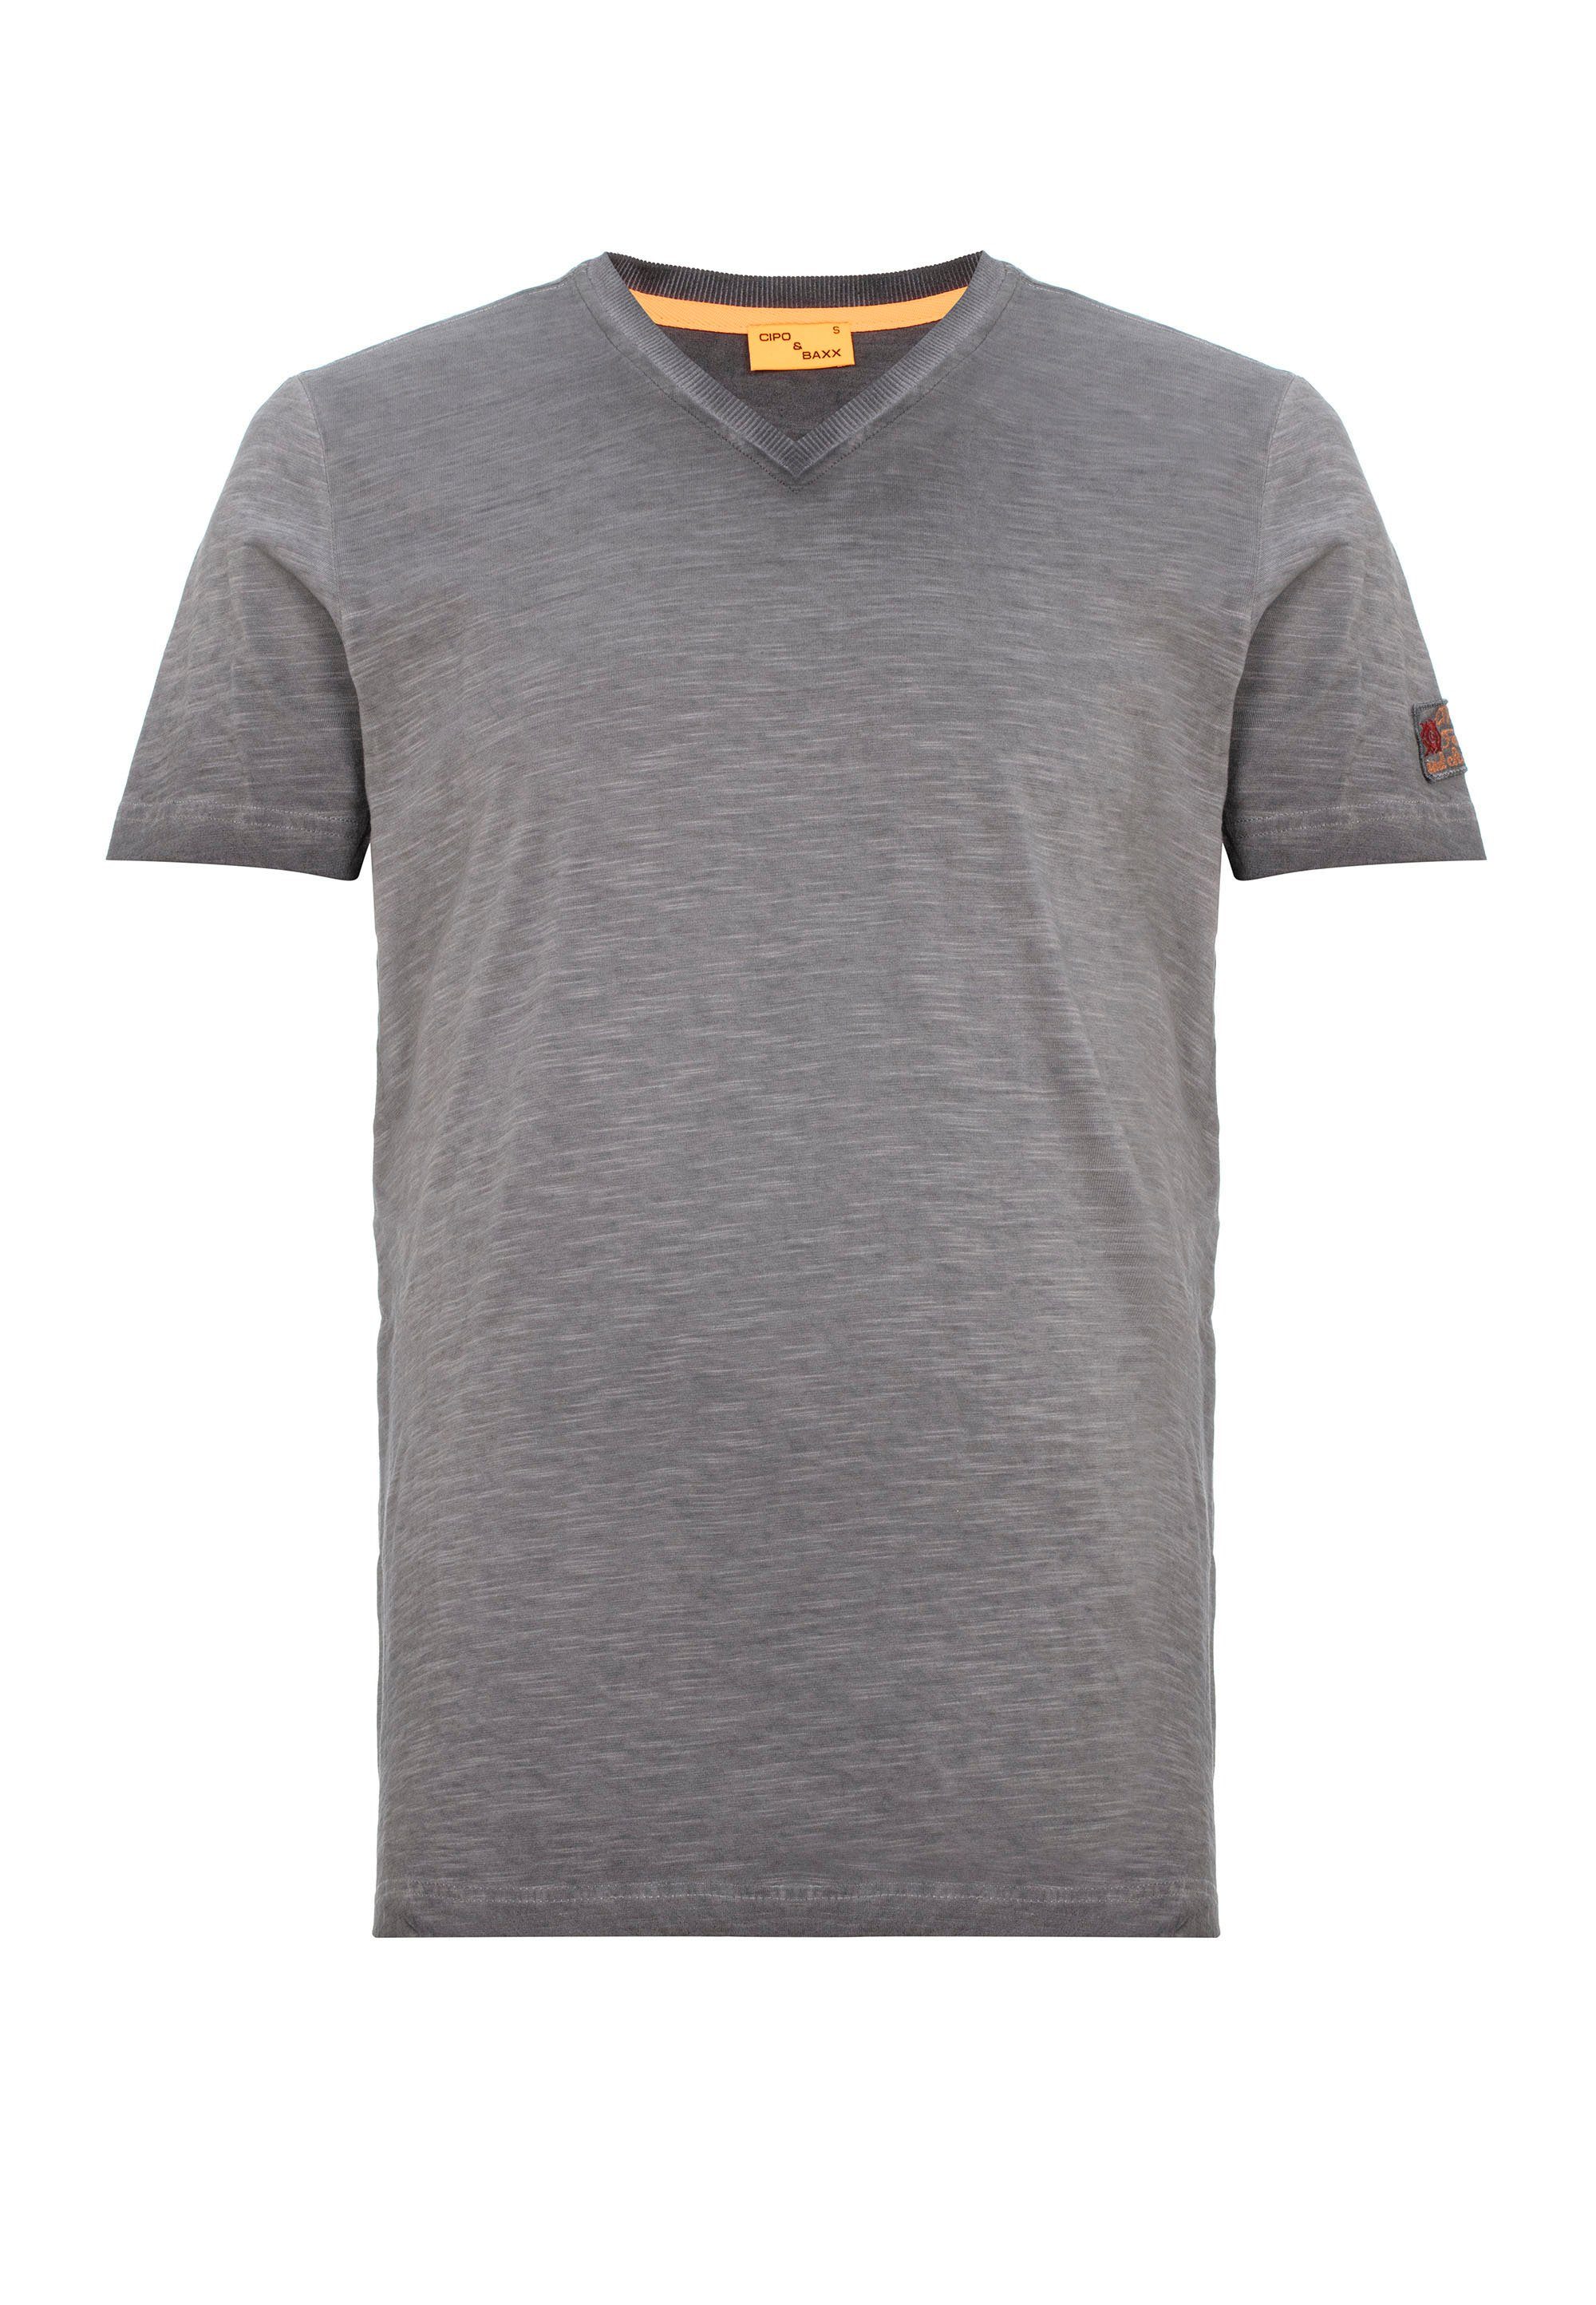 Cipo & Baxx kleinem T-Shirt anthrazit mit Logo-Patch